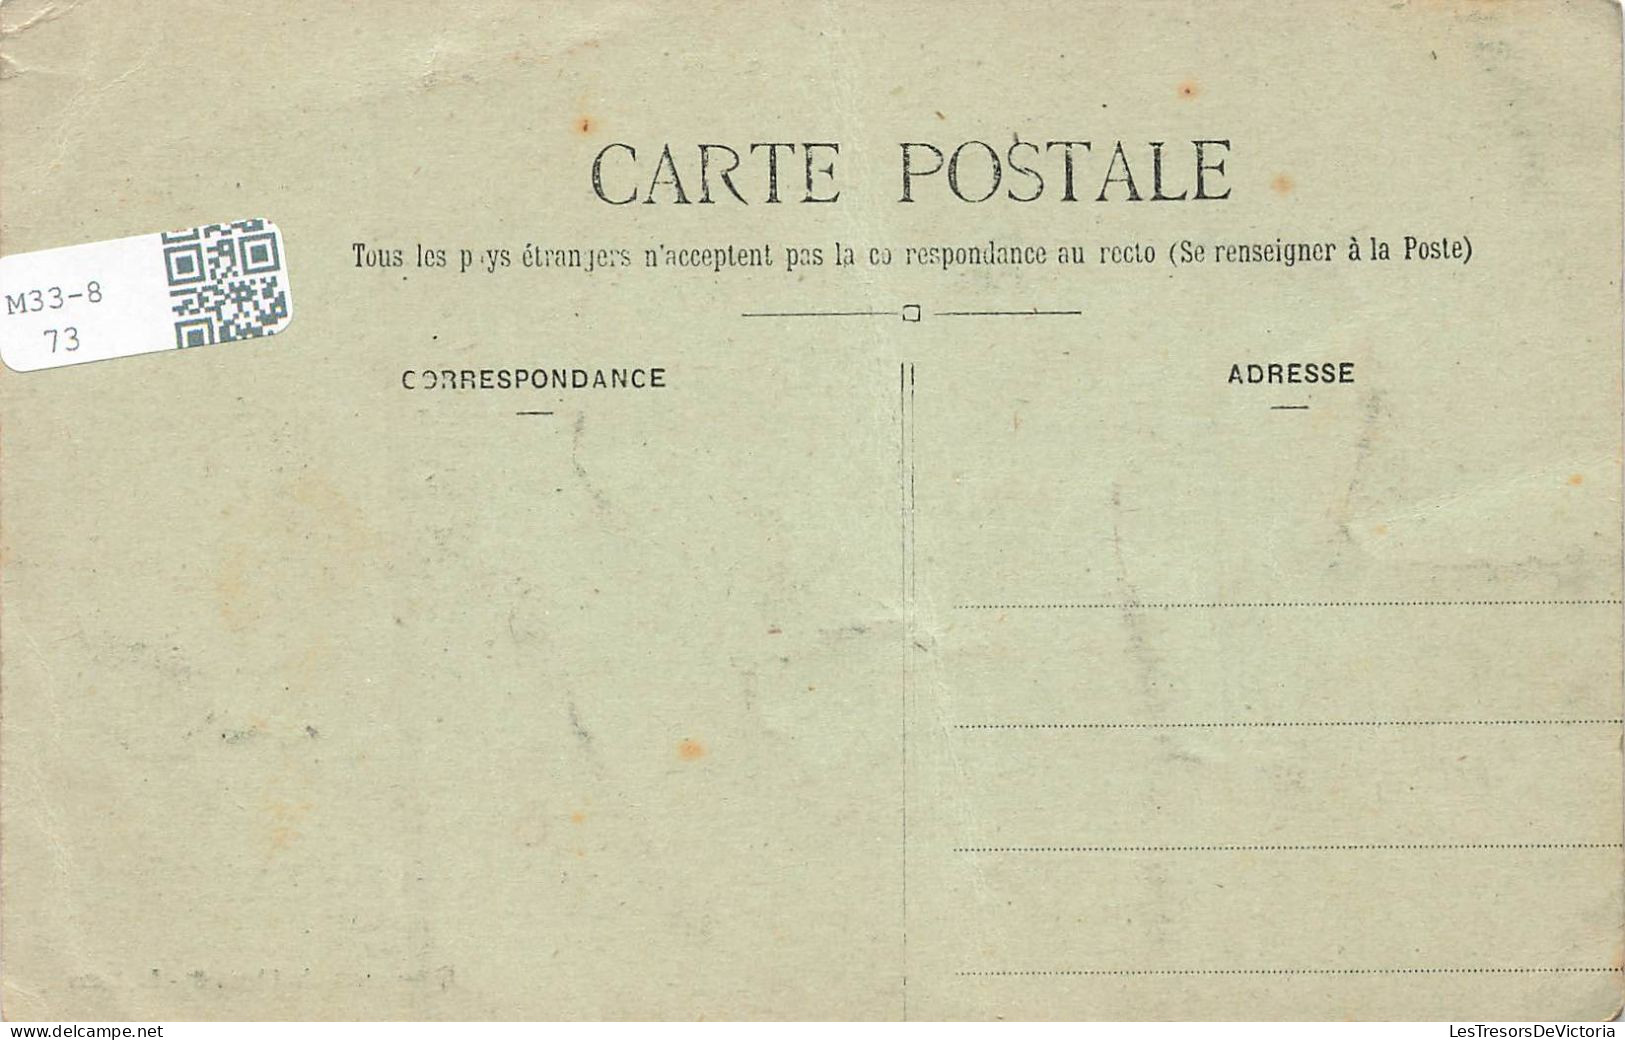 FRANCE - Bazouges Sur Le Loire - Rue Principale - Carte Postale Ancienne - Other & Unclassified